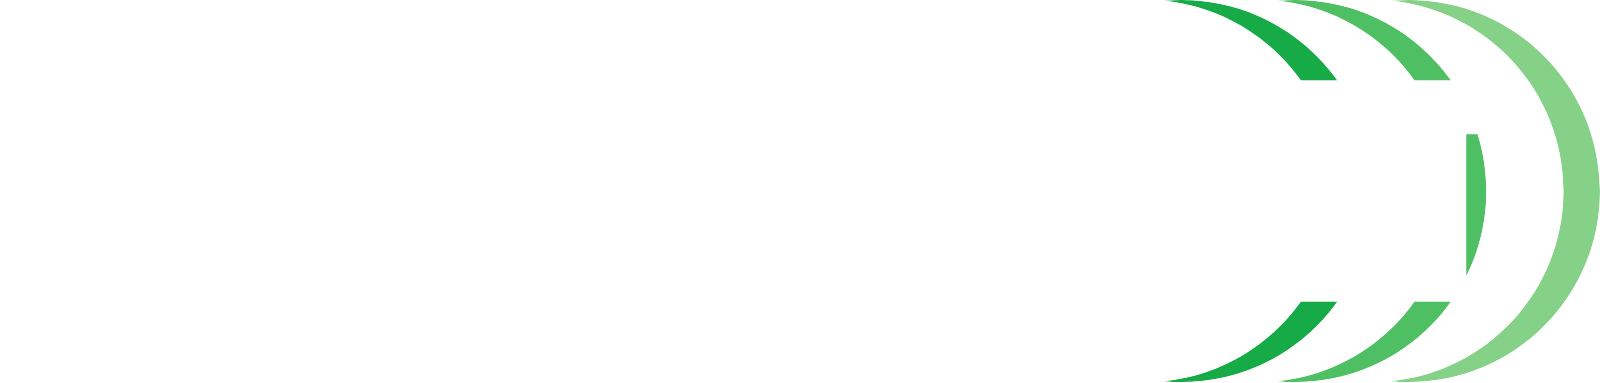 Hensoldt Logo groß für dunkle Hintergründe (transparentes PNG)